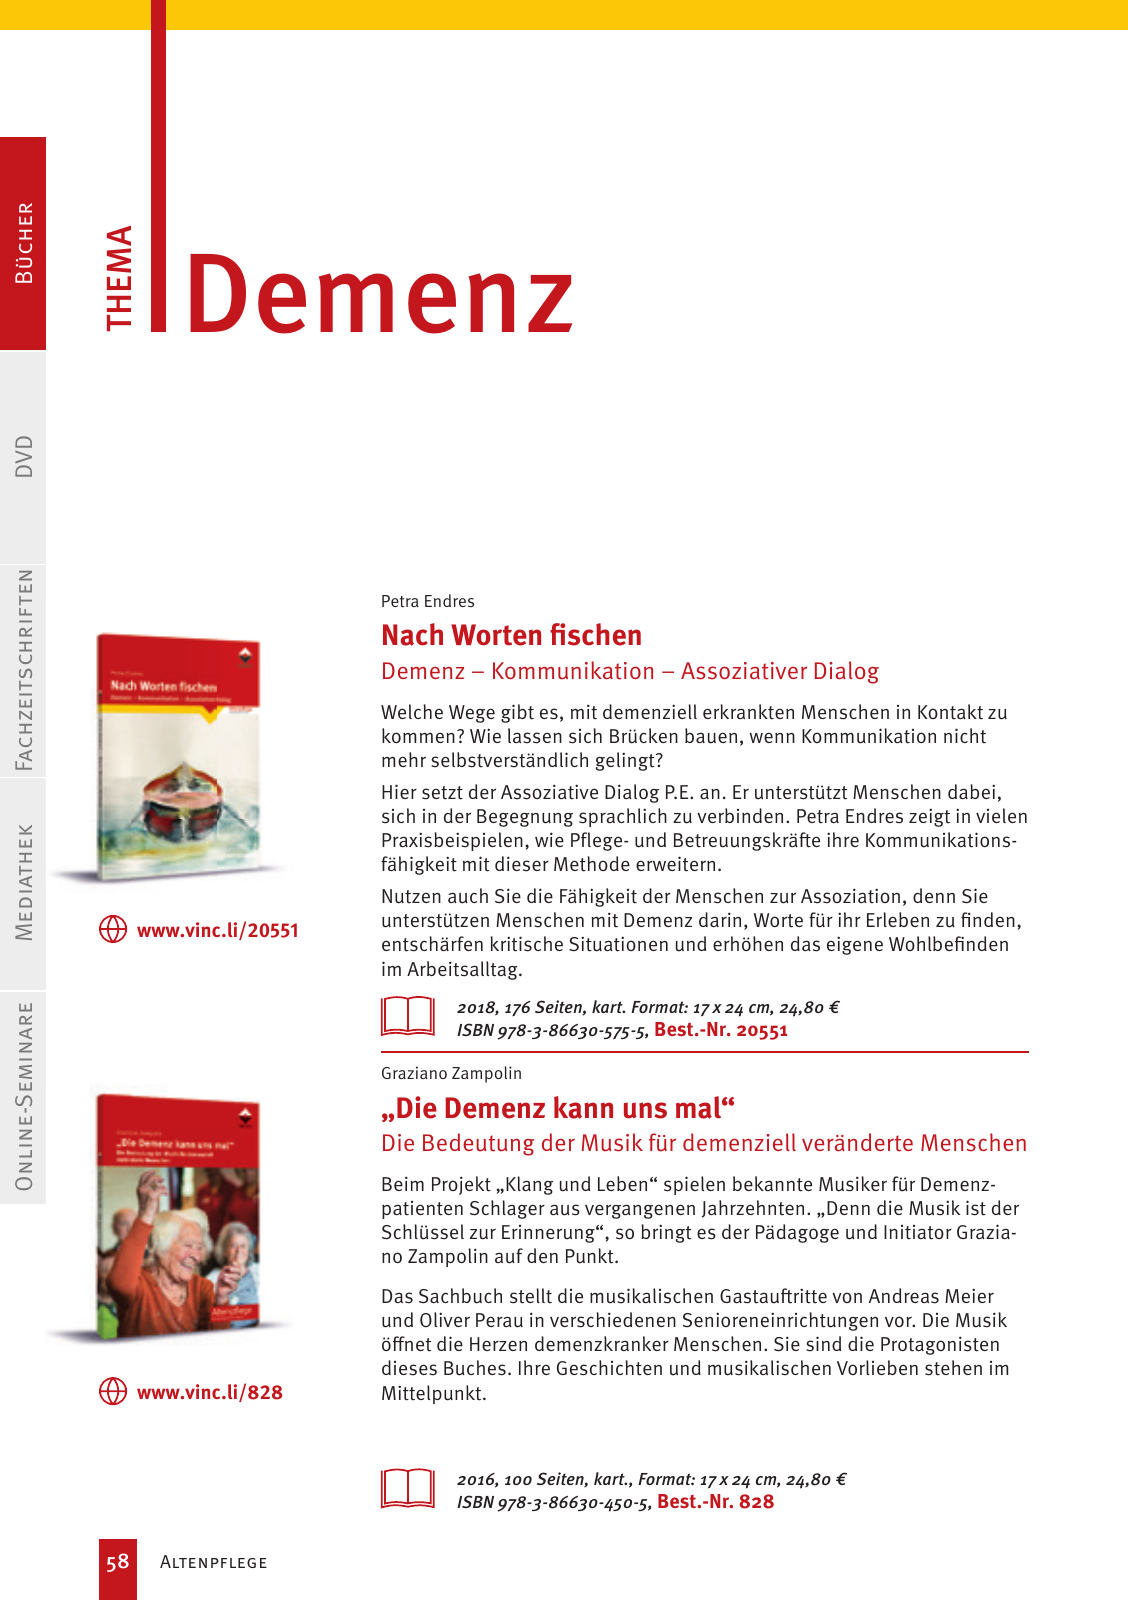 Vorschau Vincentz Verlagsprogramm 2020 Seite 58